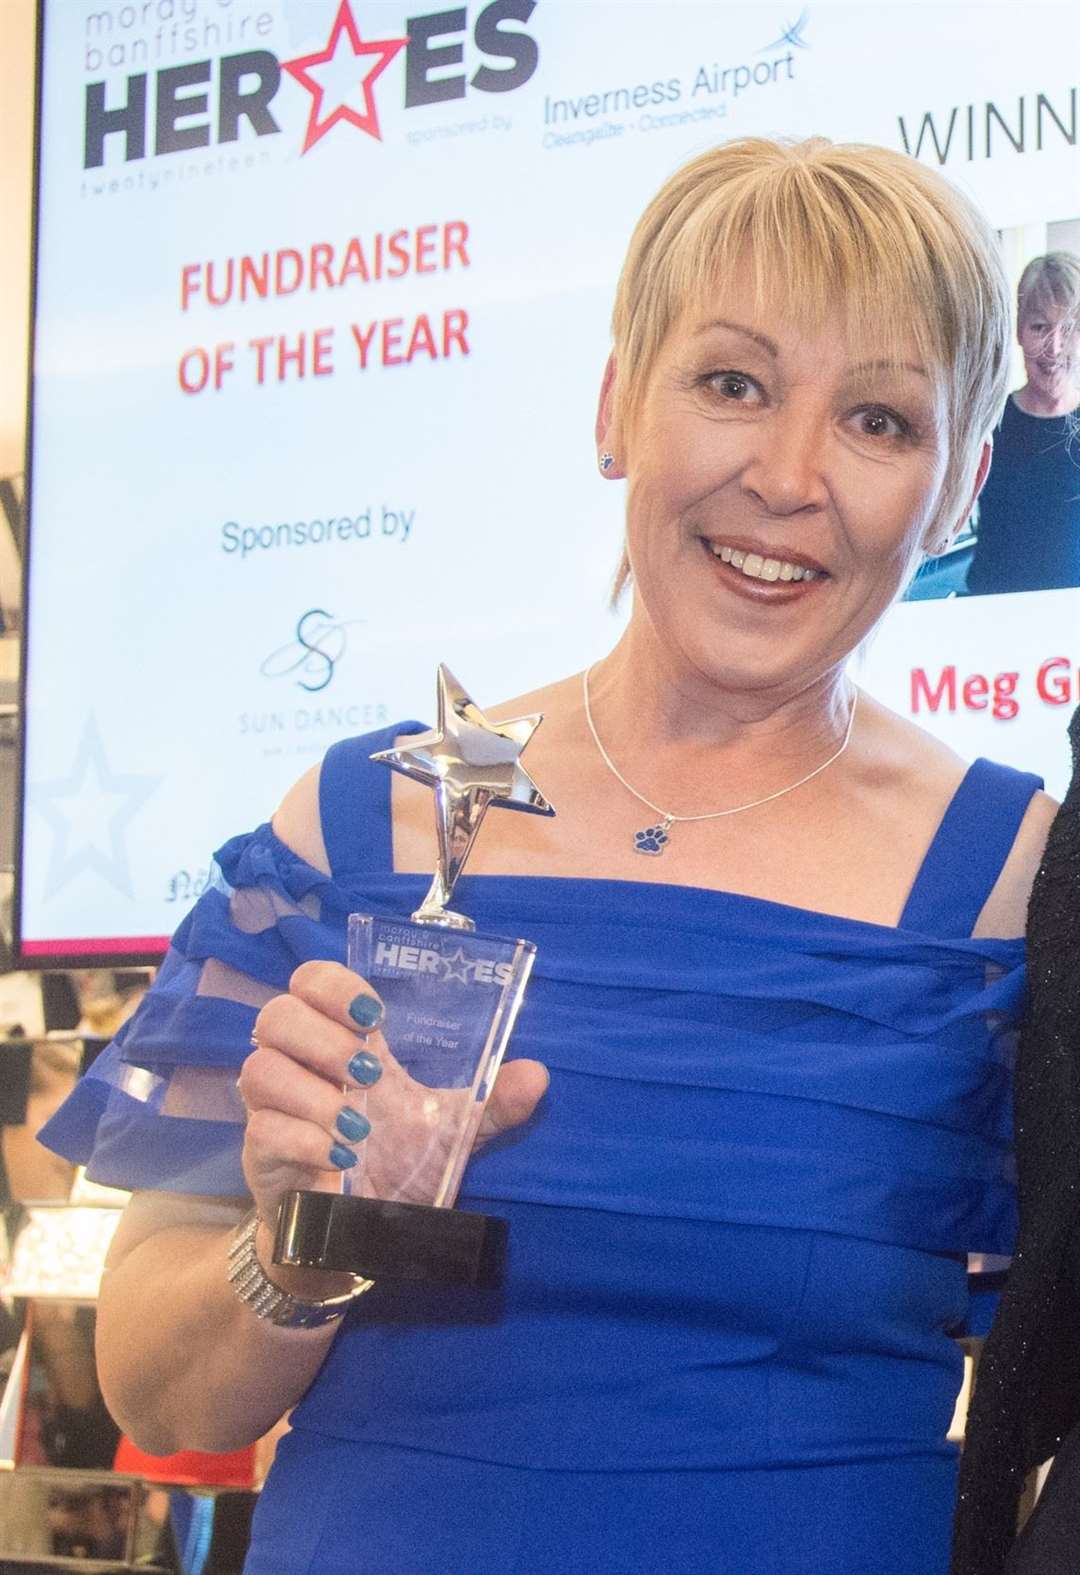 Meg Grant, winner of the fundraiser of the year 2019.